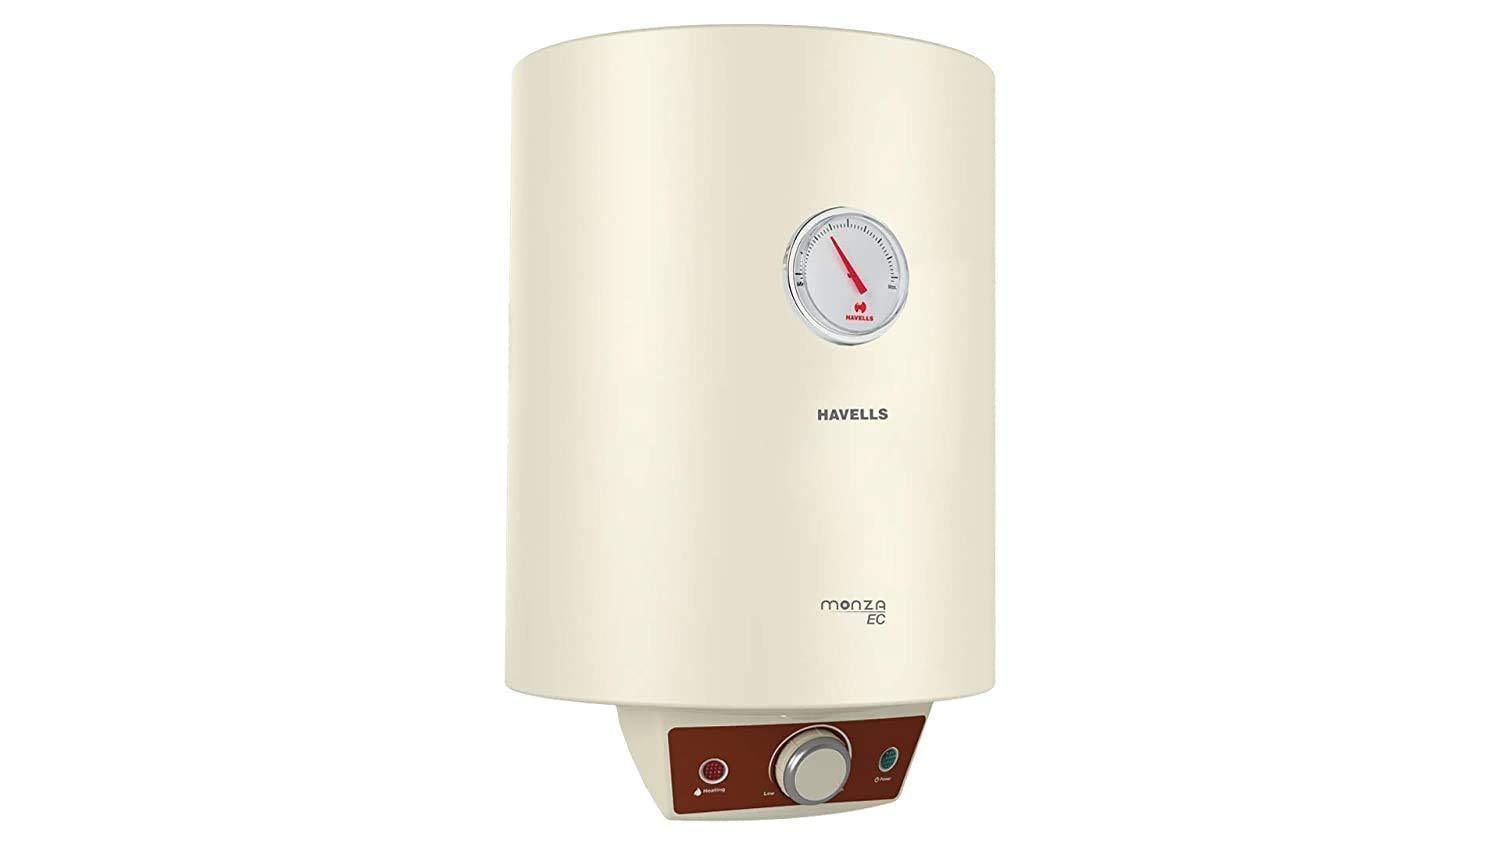 Havells Stilus 500 Watt Juicer Mixer Grinder with 4 jar (White/Black)-Home & Kitchen Appliances-dealsplant